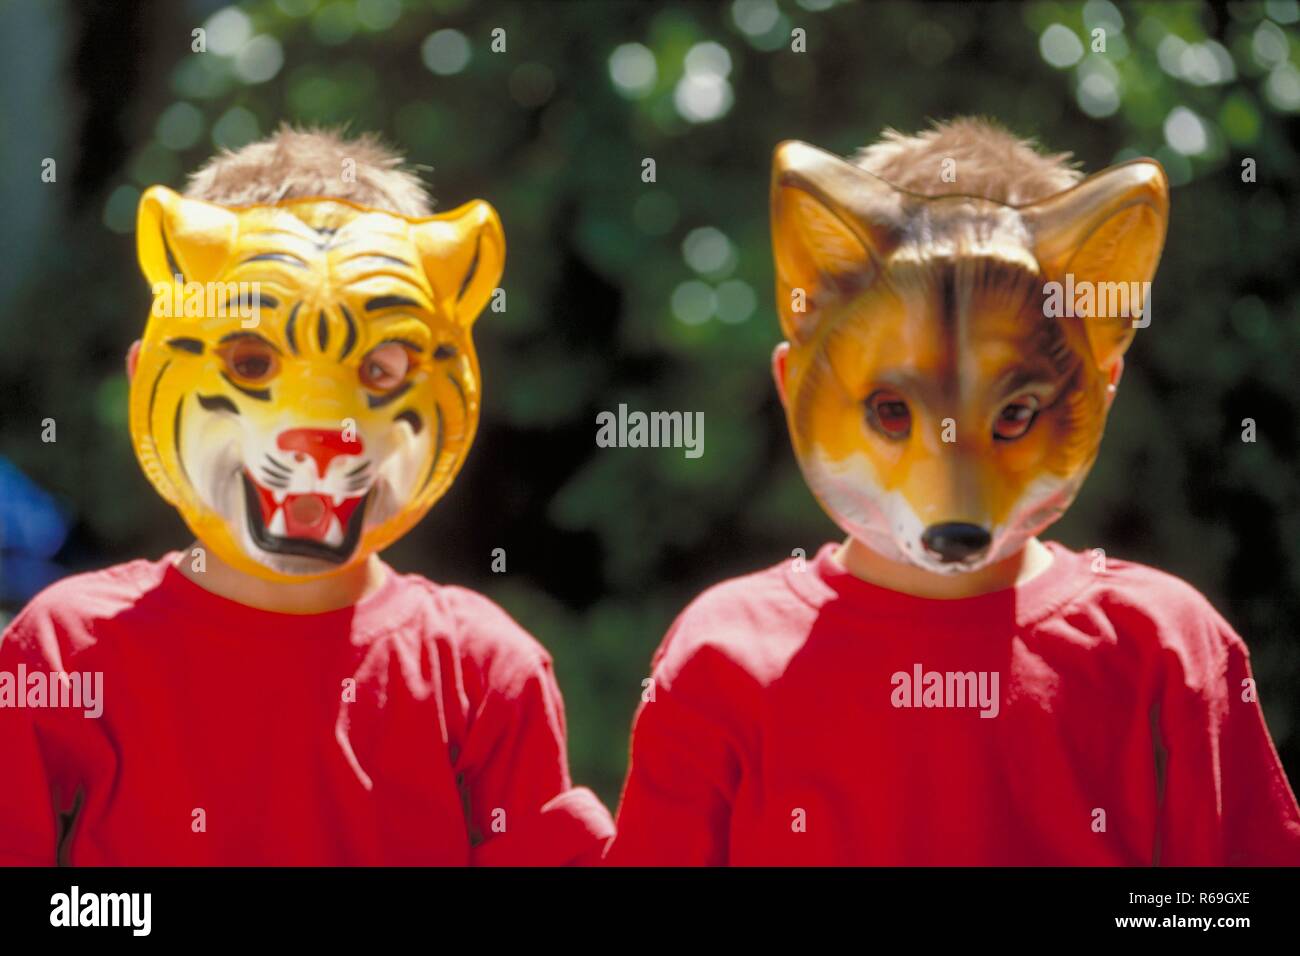 Portrait, Nahaufnahme, zwei 6 Jahre alte  Zwillings-Jungen mit kurzen blonden Haaren bekleidet mit roten T-Shirts, die ihre Gesichter hinter Tiermasken verbergen Stock Photo